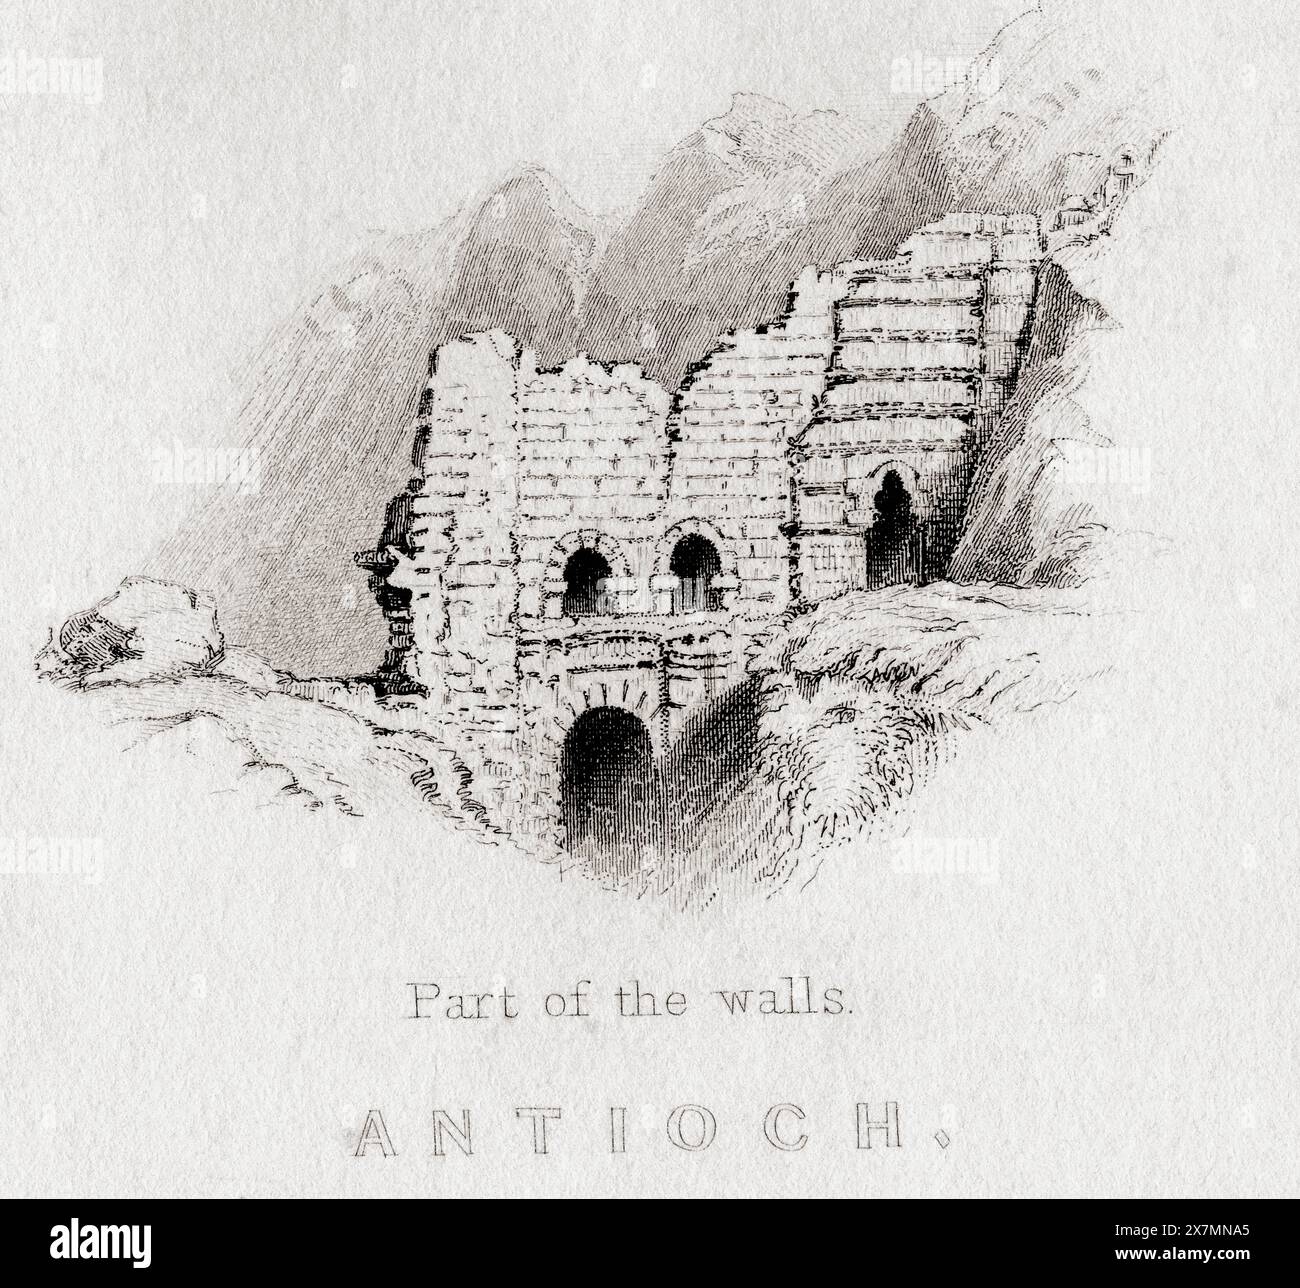 Antiochia, ein Teil der Mauern. Druck aus dem 19. Jahrhundert von W.H. Bartlett. Stockfoto